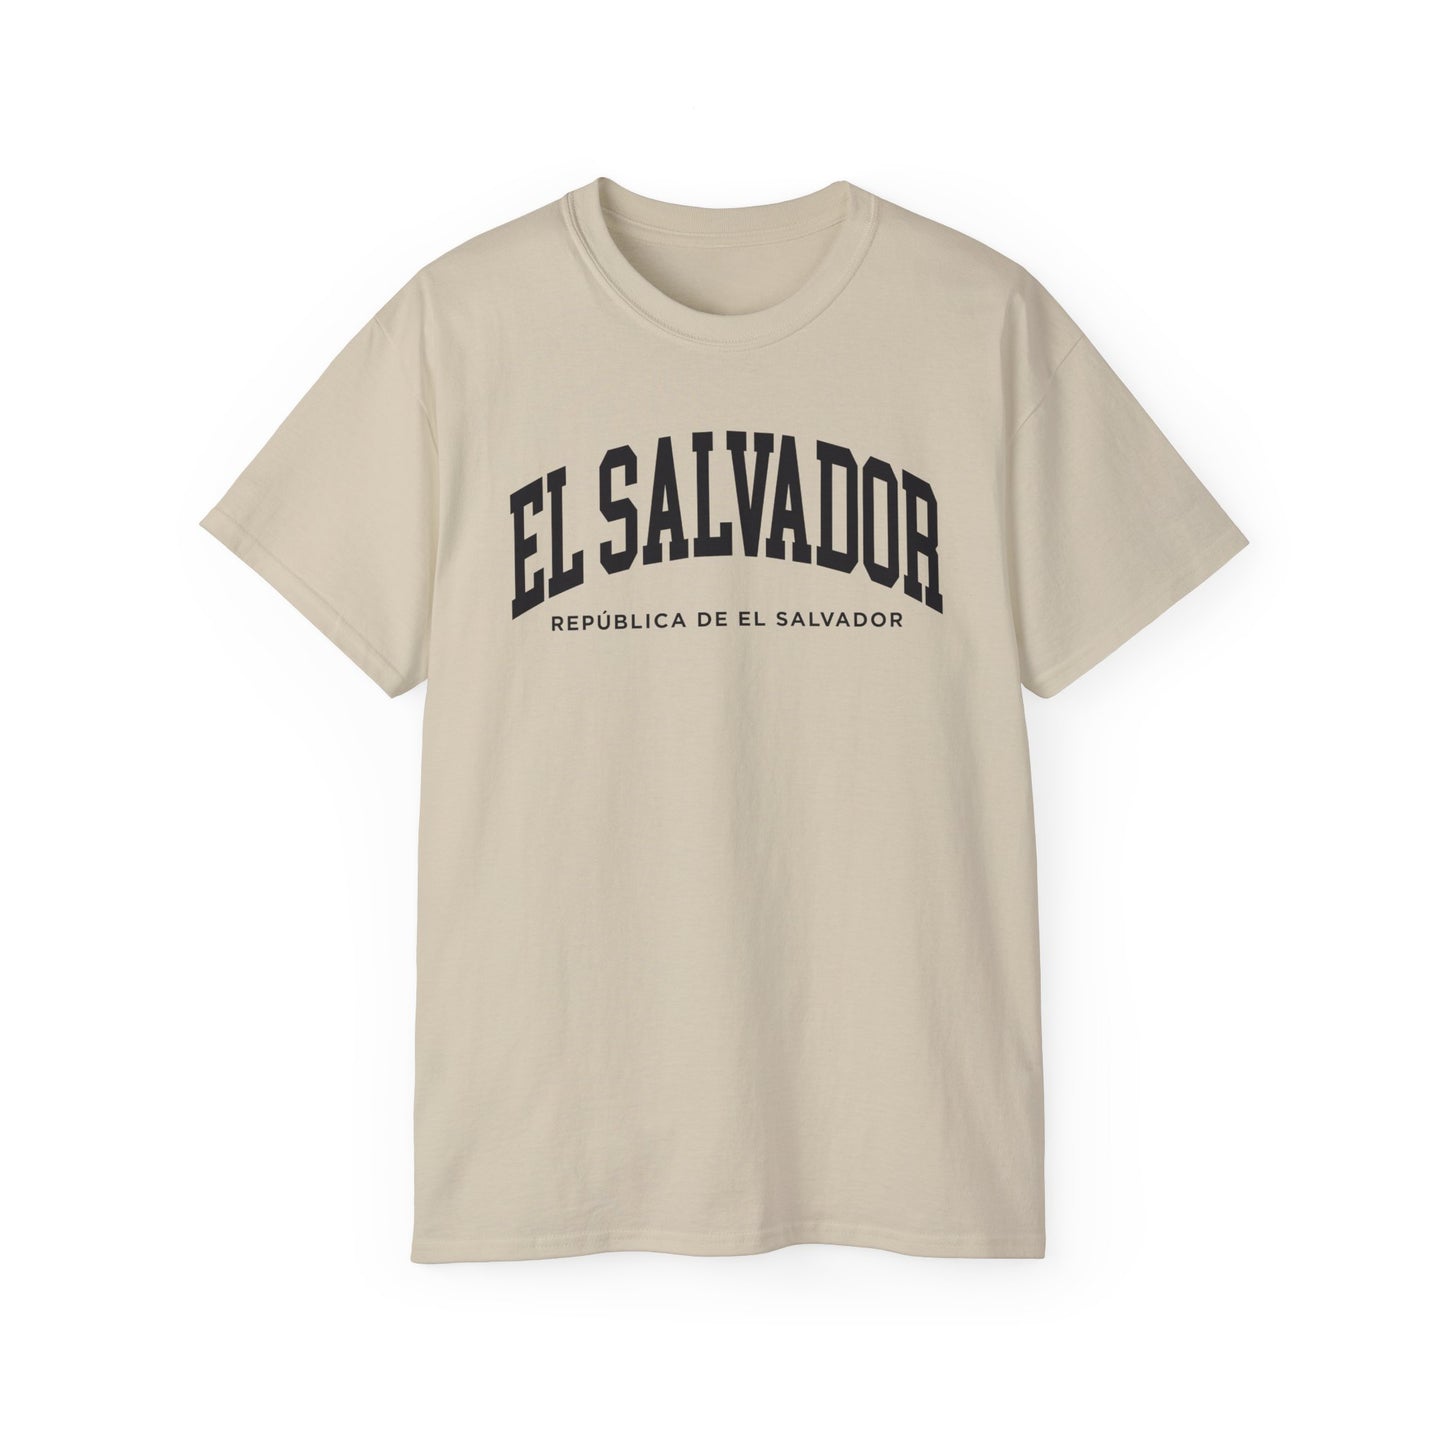 El Salvador Tee